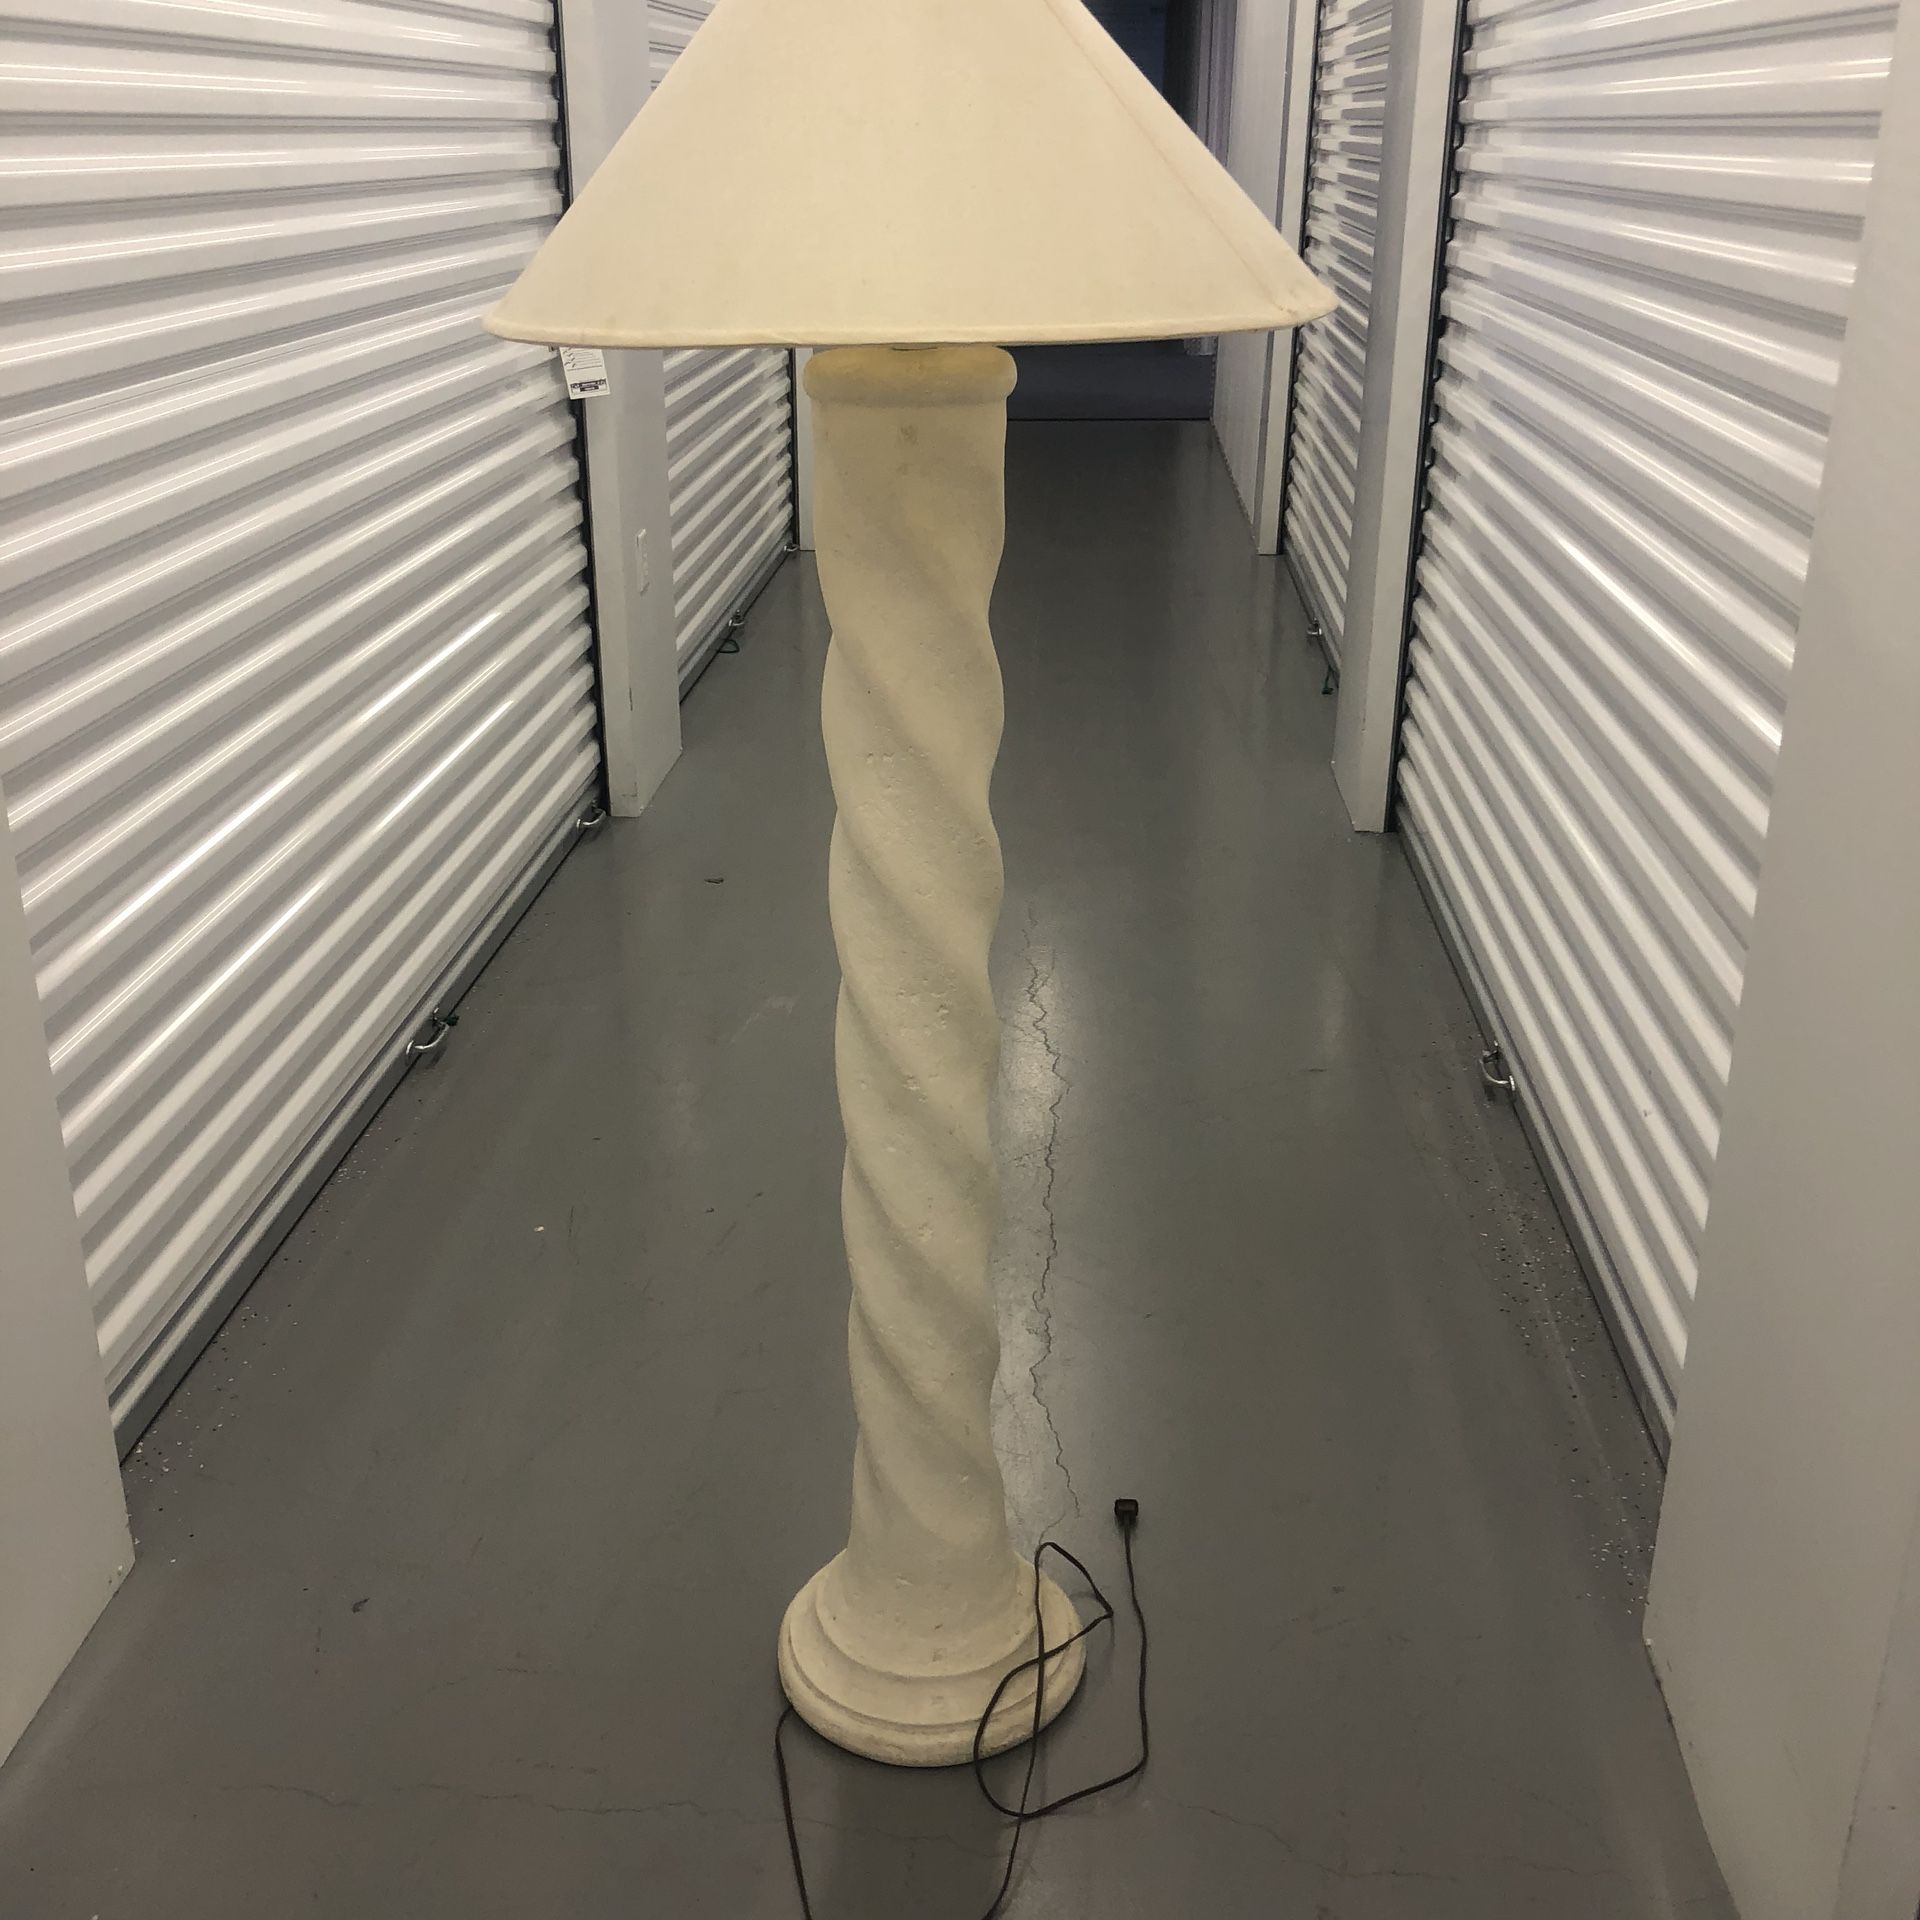 5’ antique off white lamp